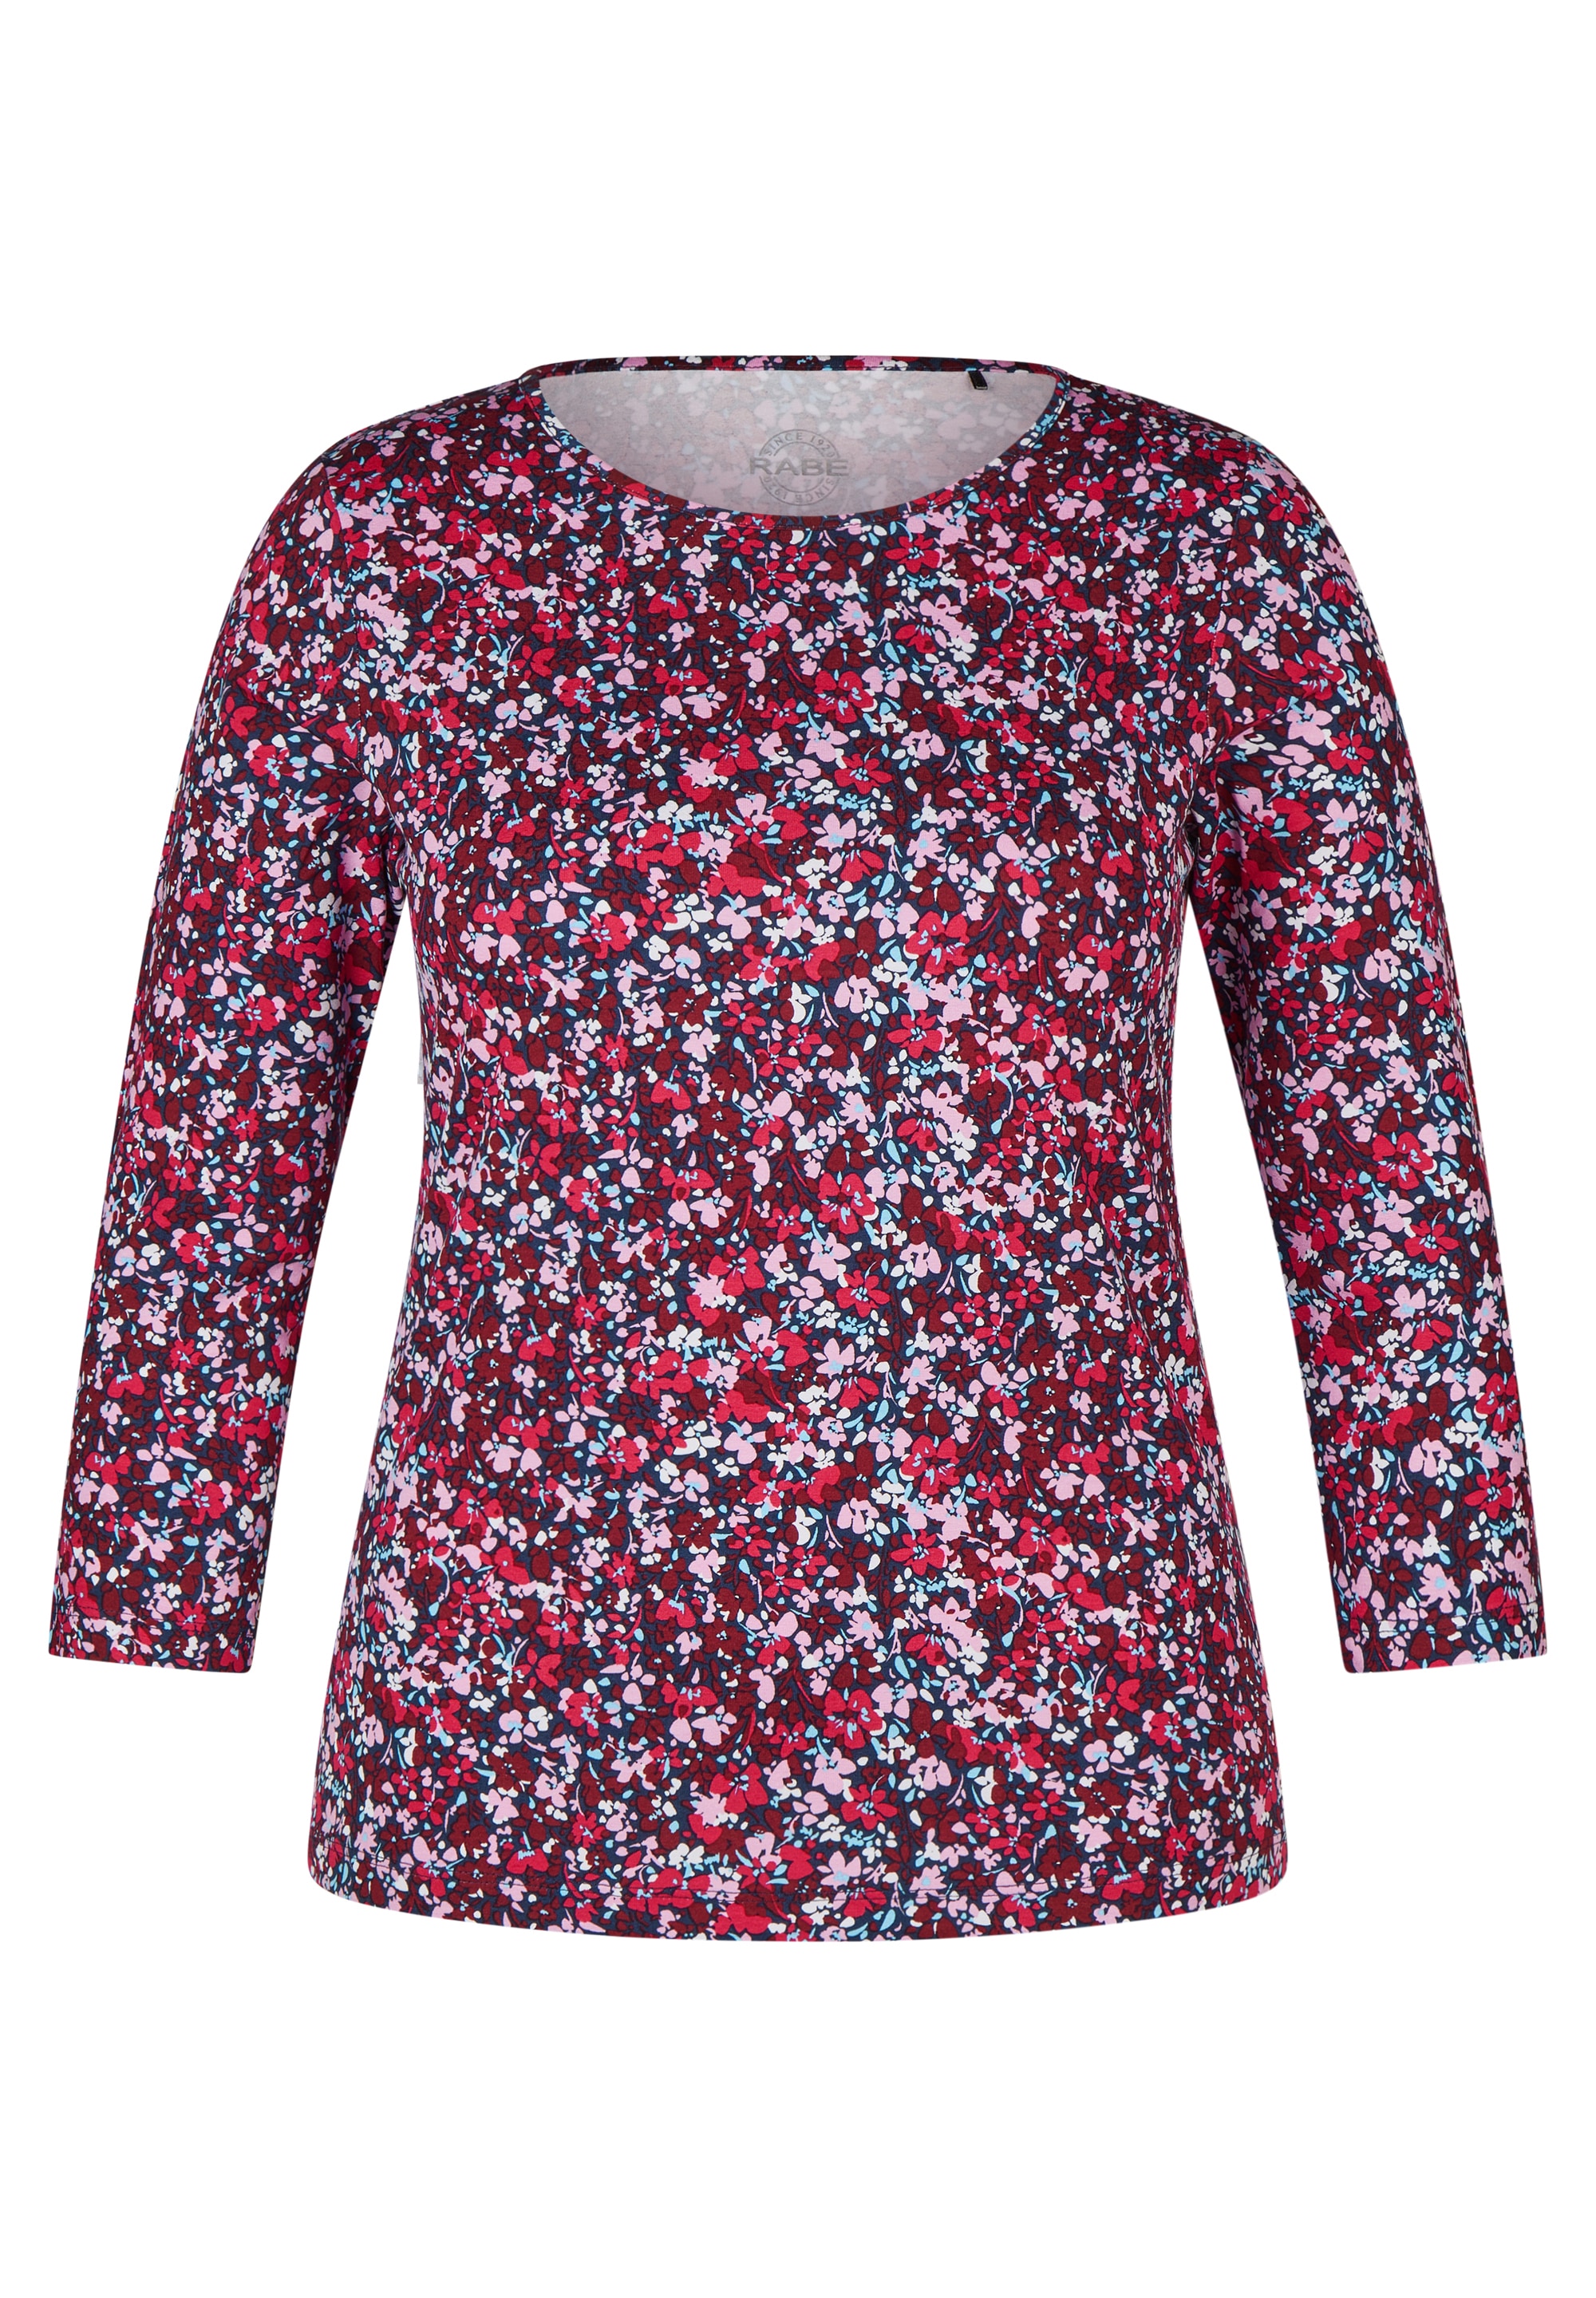 BAUR mit Rabe | kaufen für floralem Allover-Muster Shirtbluse,